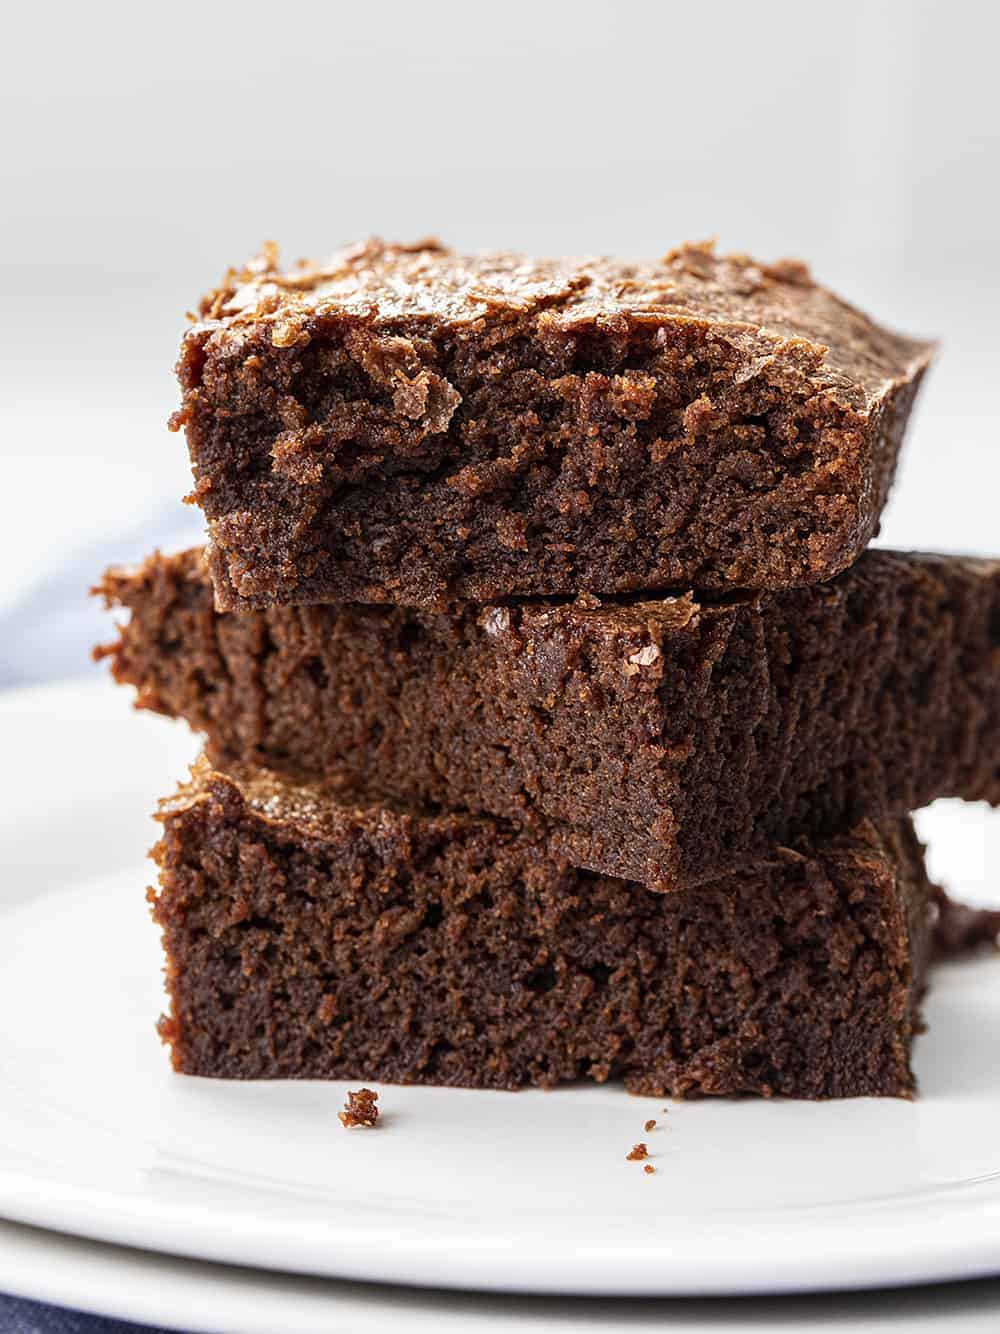 https://iambaker.net/wp-content/uploads/2020/03/sourdough-brownies-3.jpg